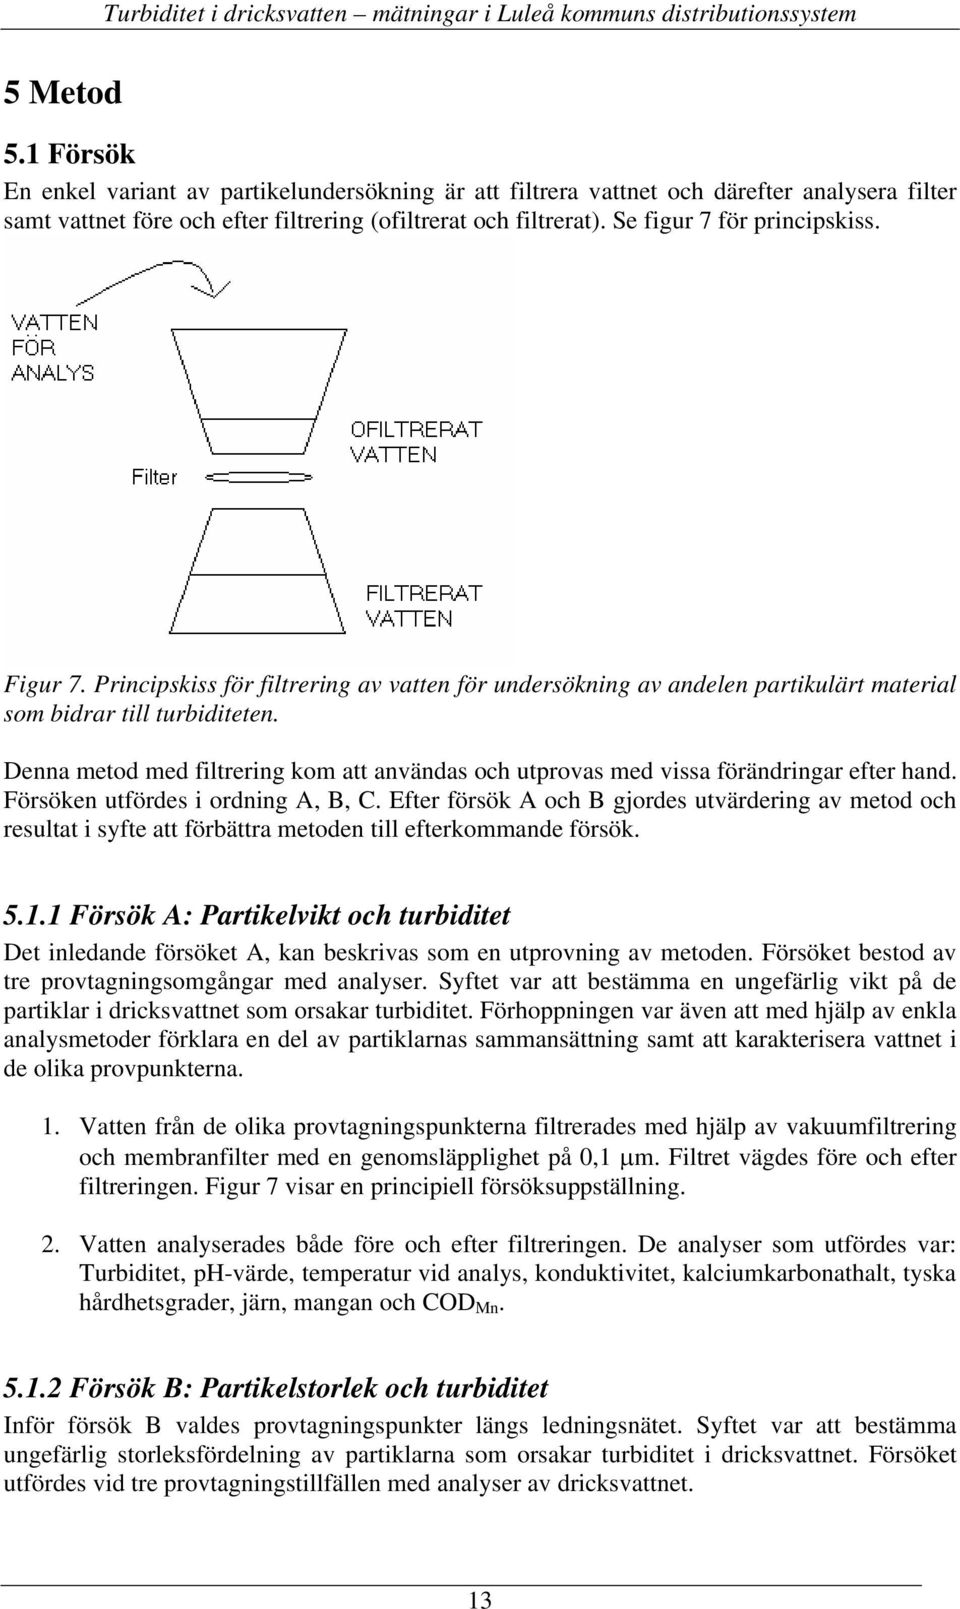 Figur 7. Principskiss för filtrering av vatten för undersökning av andelen partikulärt material som bidrar till turbiditeten.